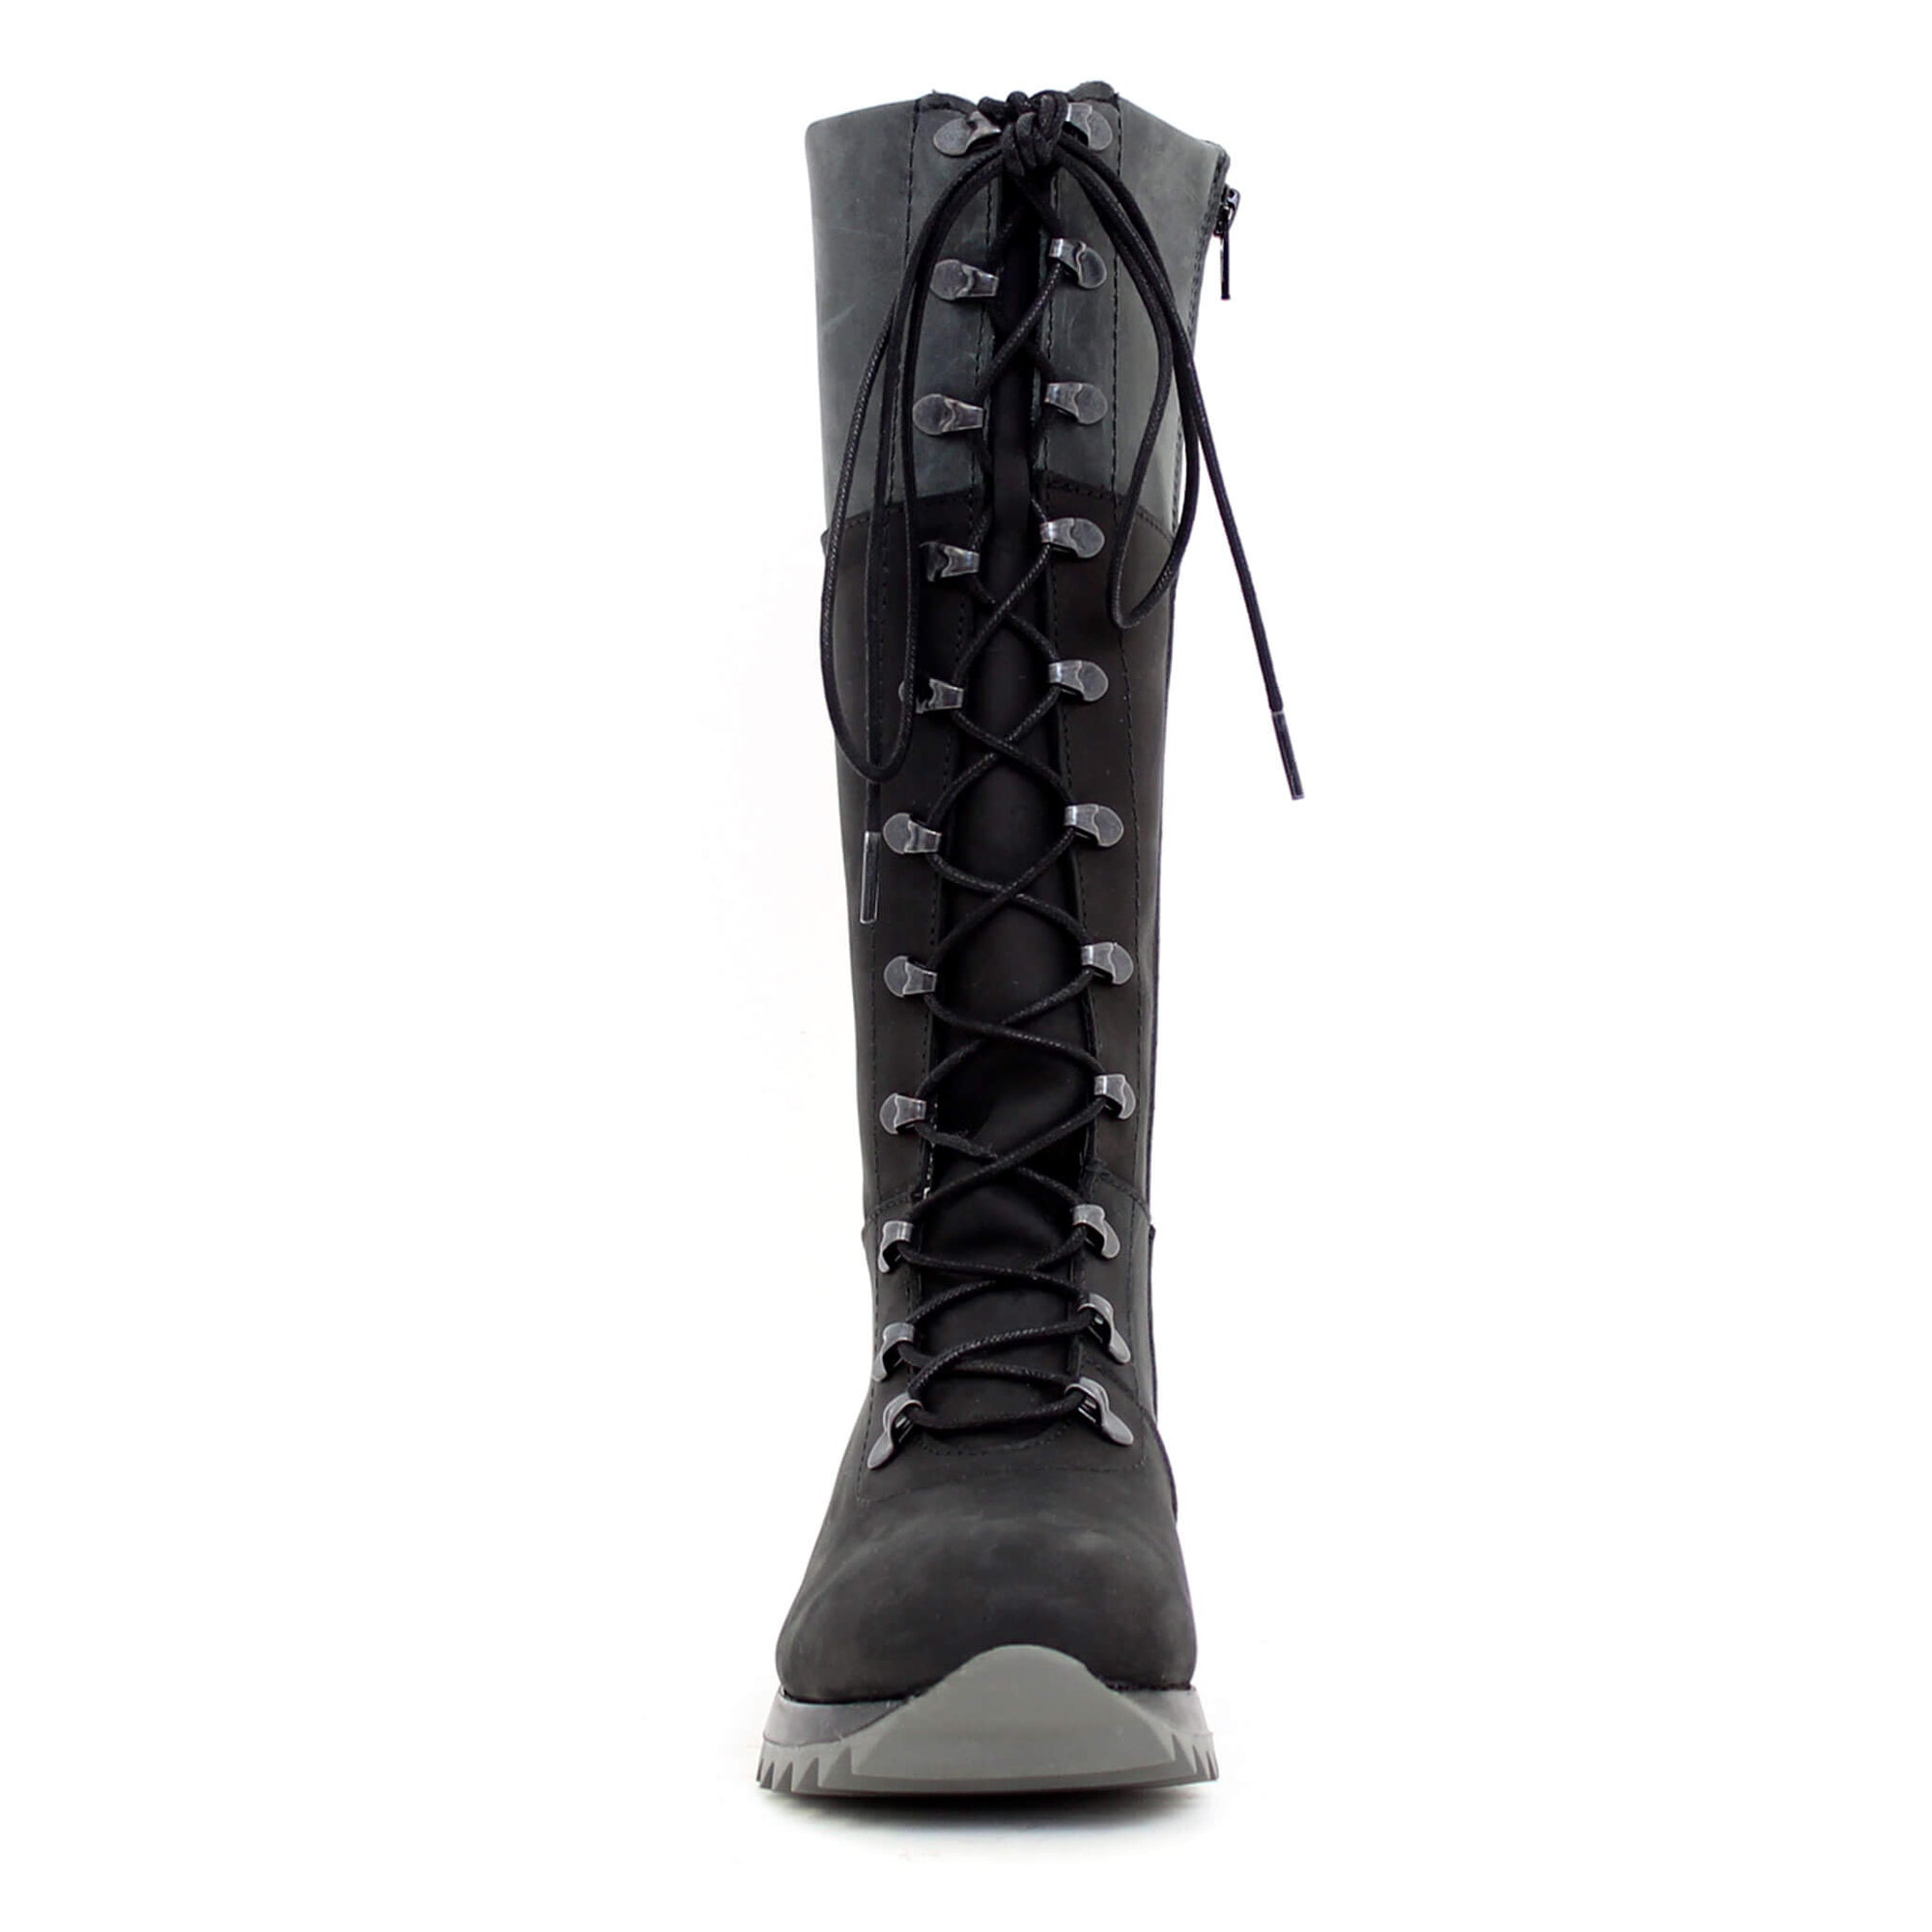 Peak Winter Boot for Women -  Bordo-Black